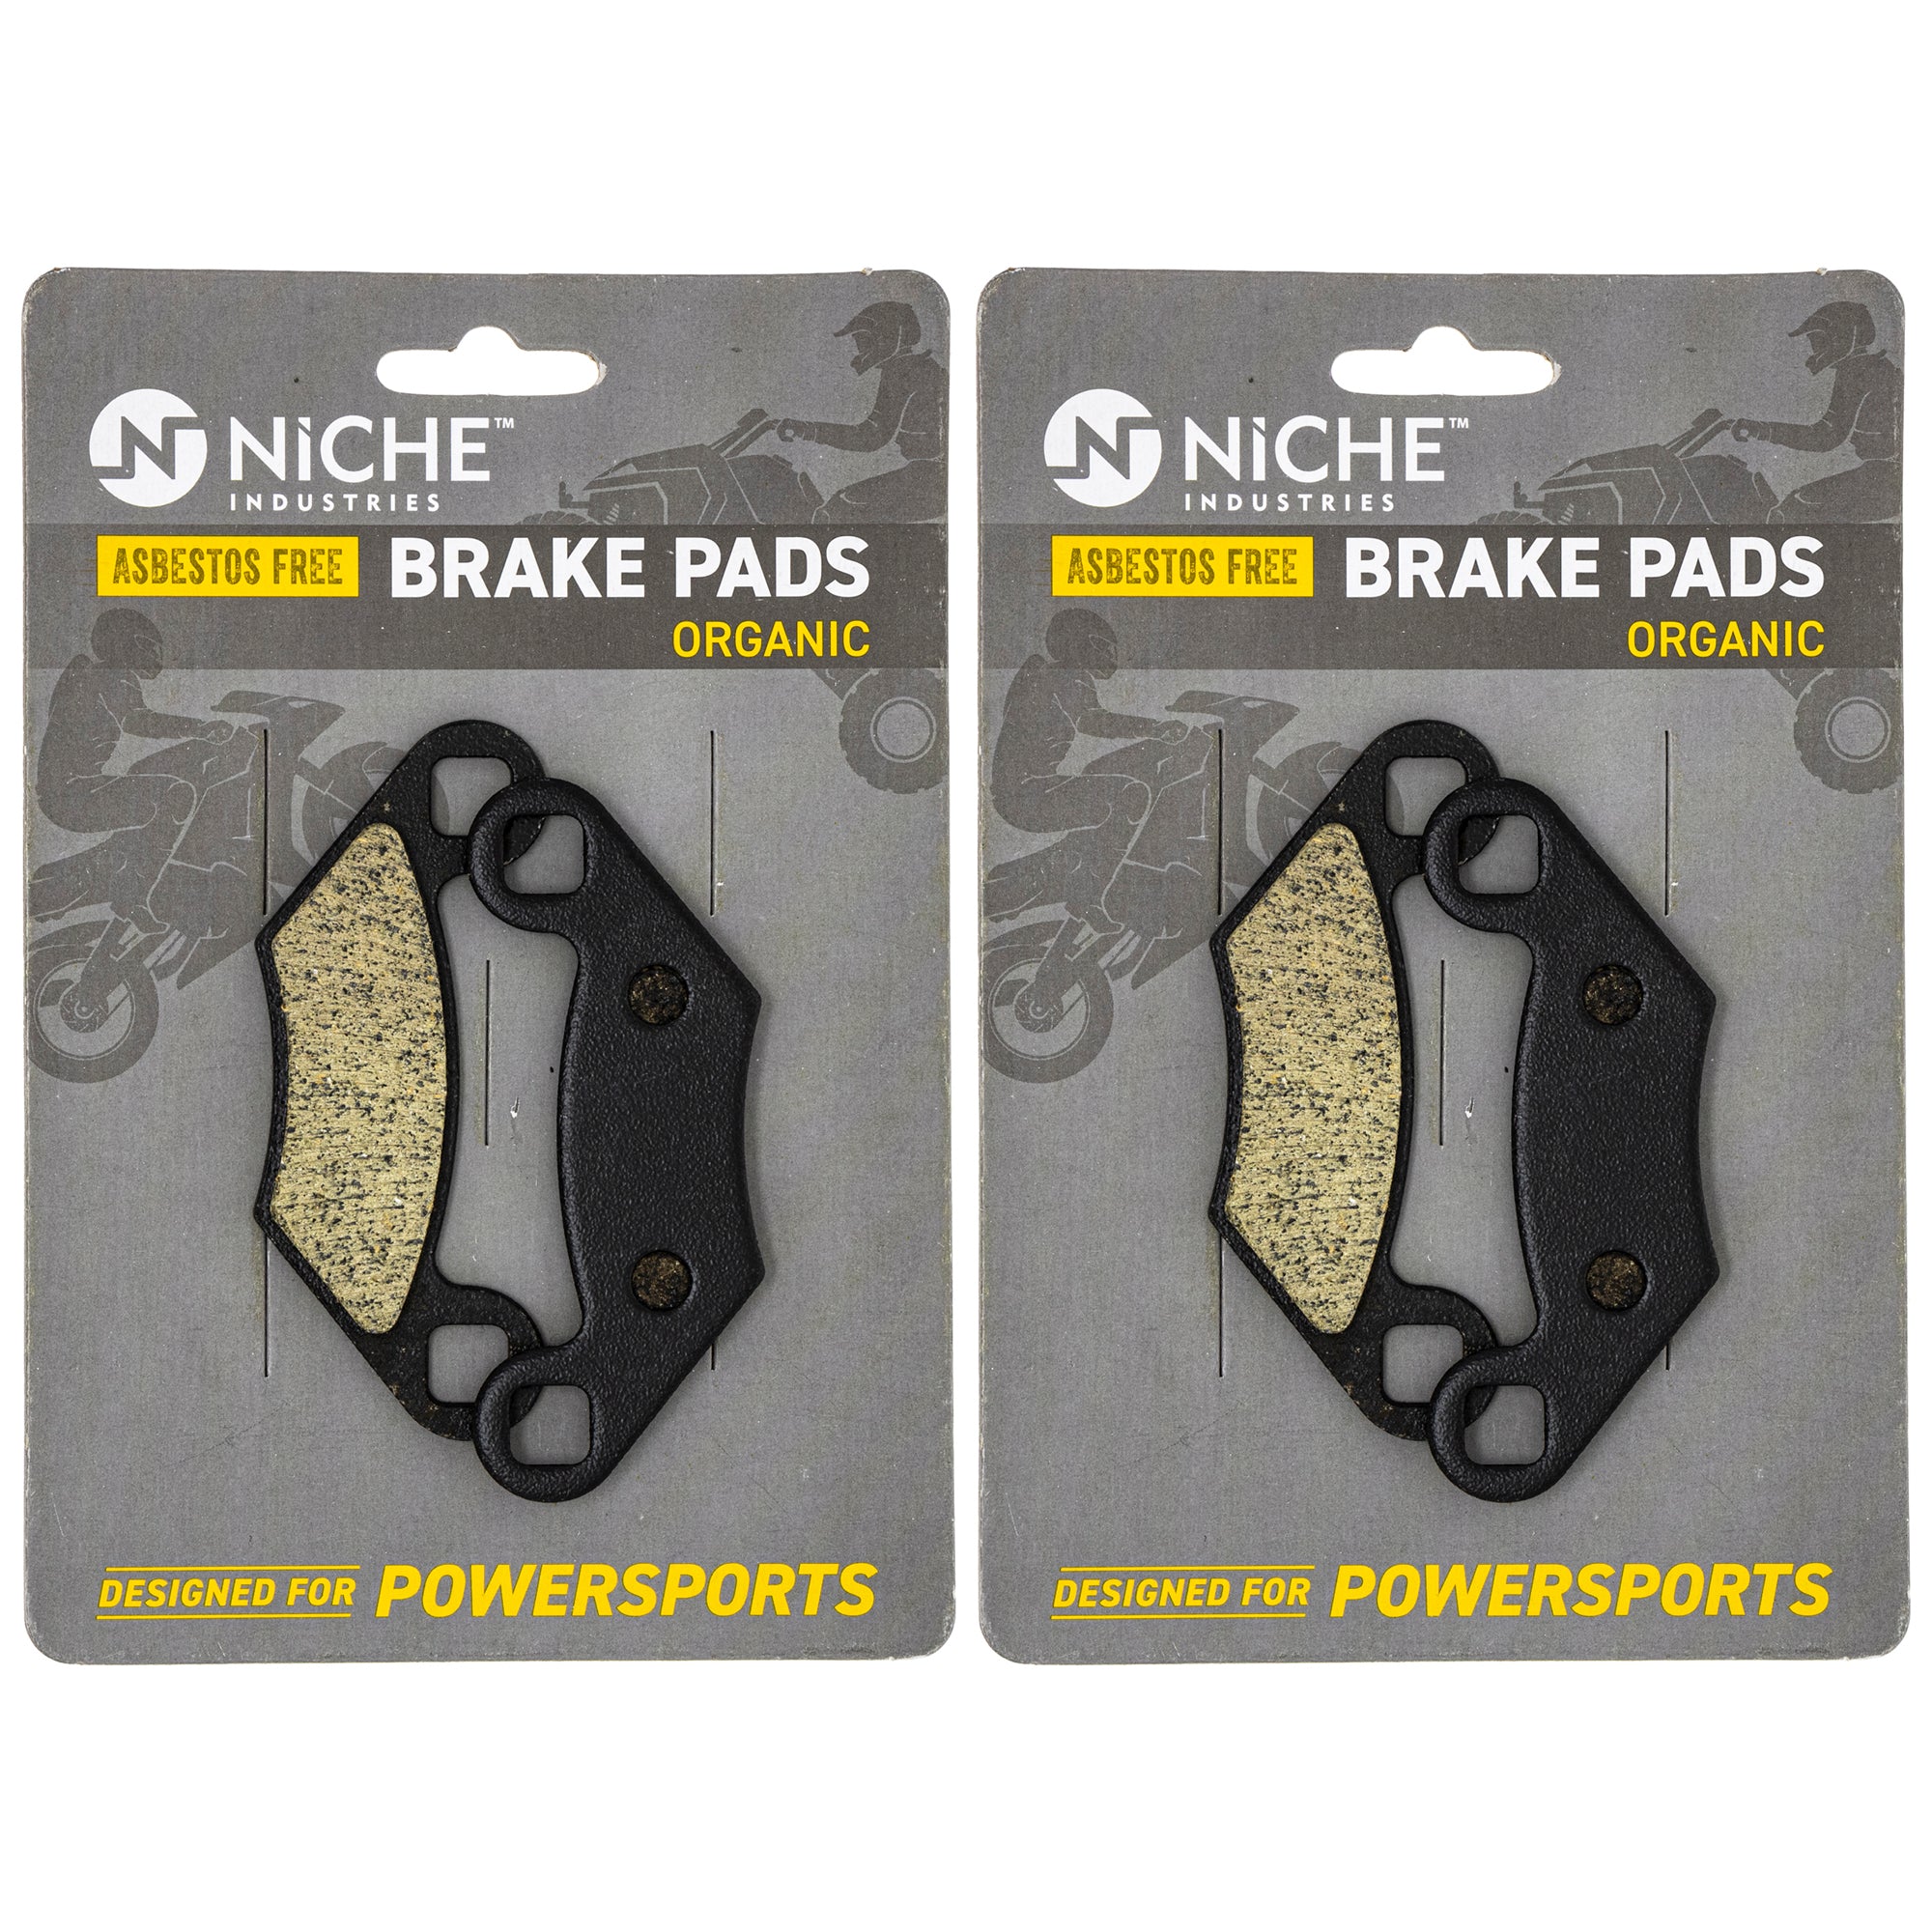 NICHE MK1001550 Brake Pad Kit Front/Rear for Polaris Xplorer